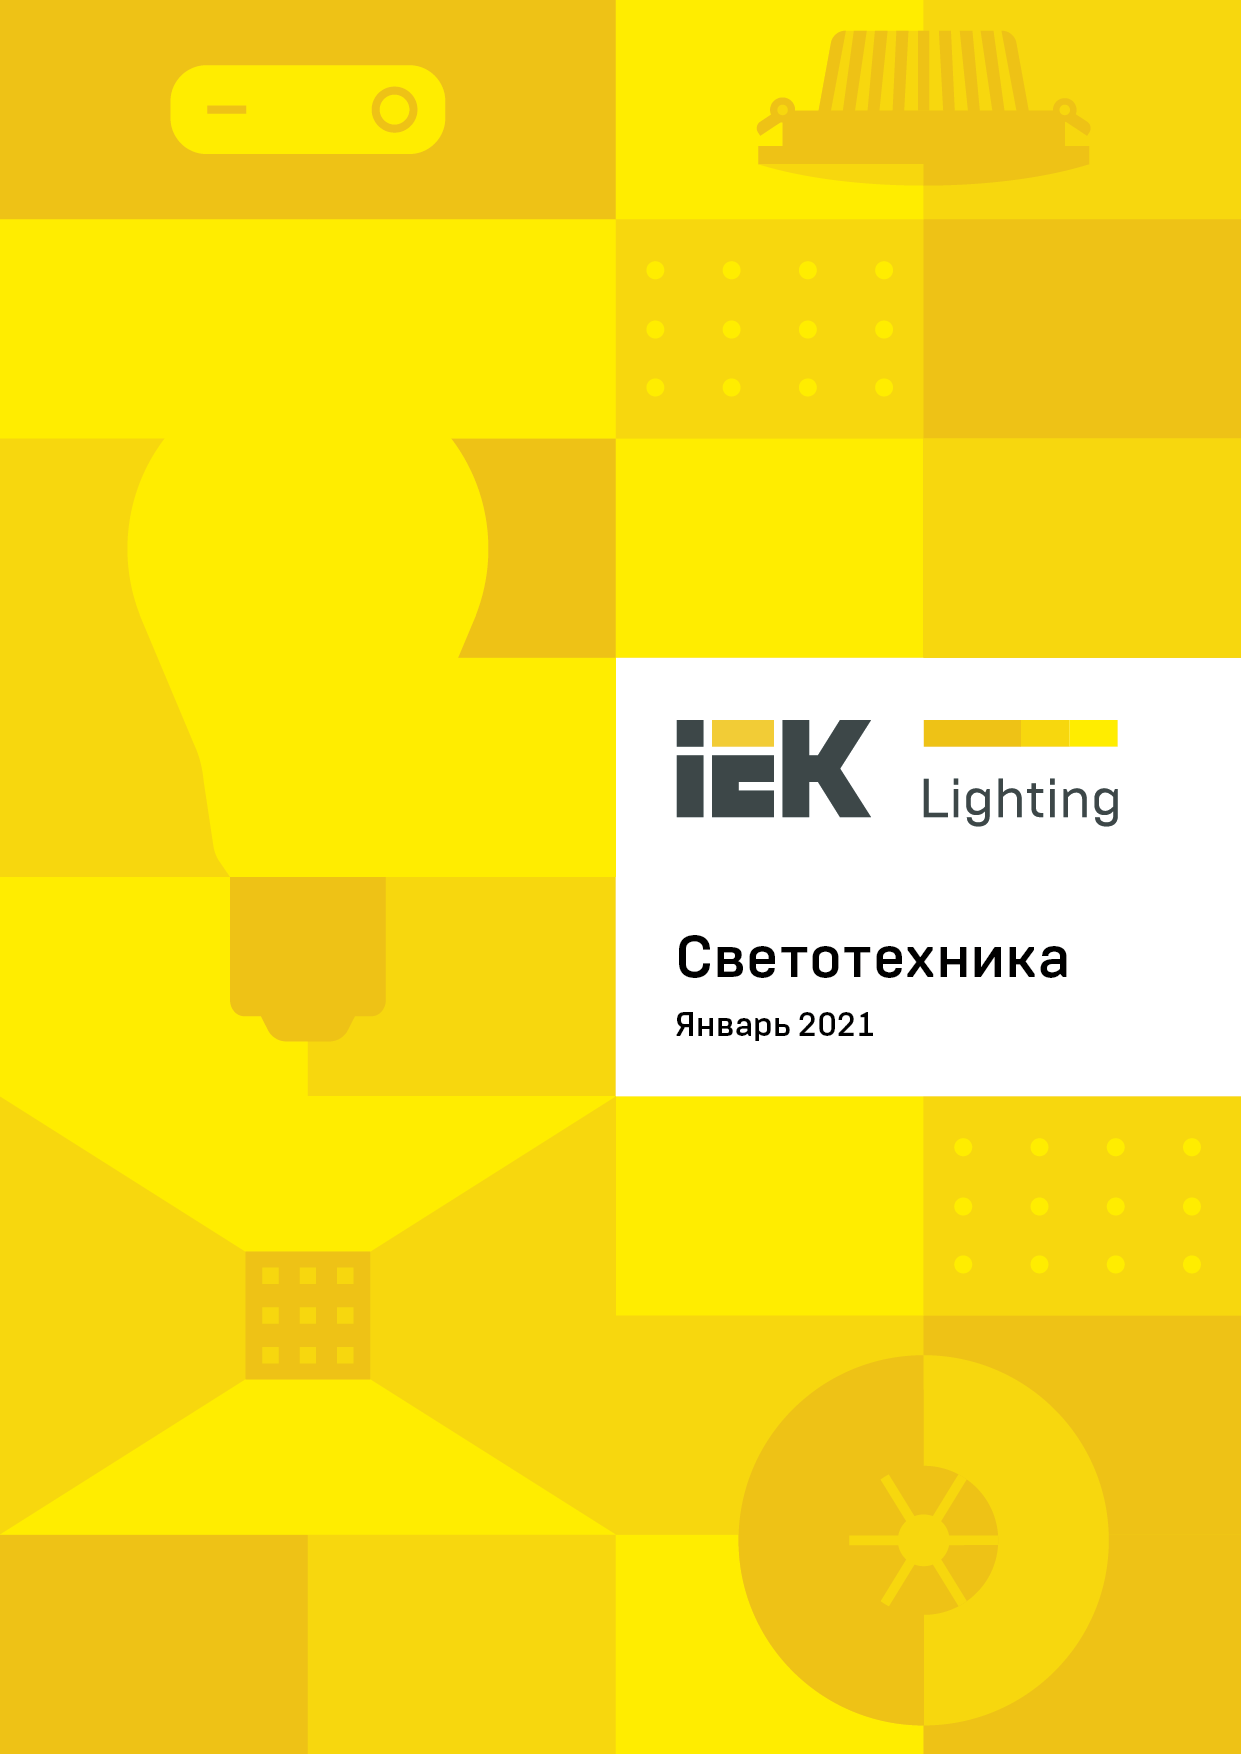 Новое издание каталога IEK Lighting: все о светотехнике IEK® 